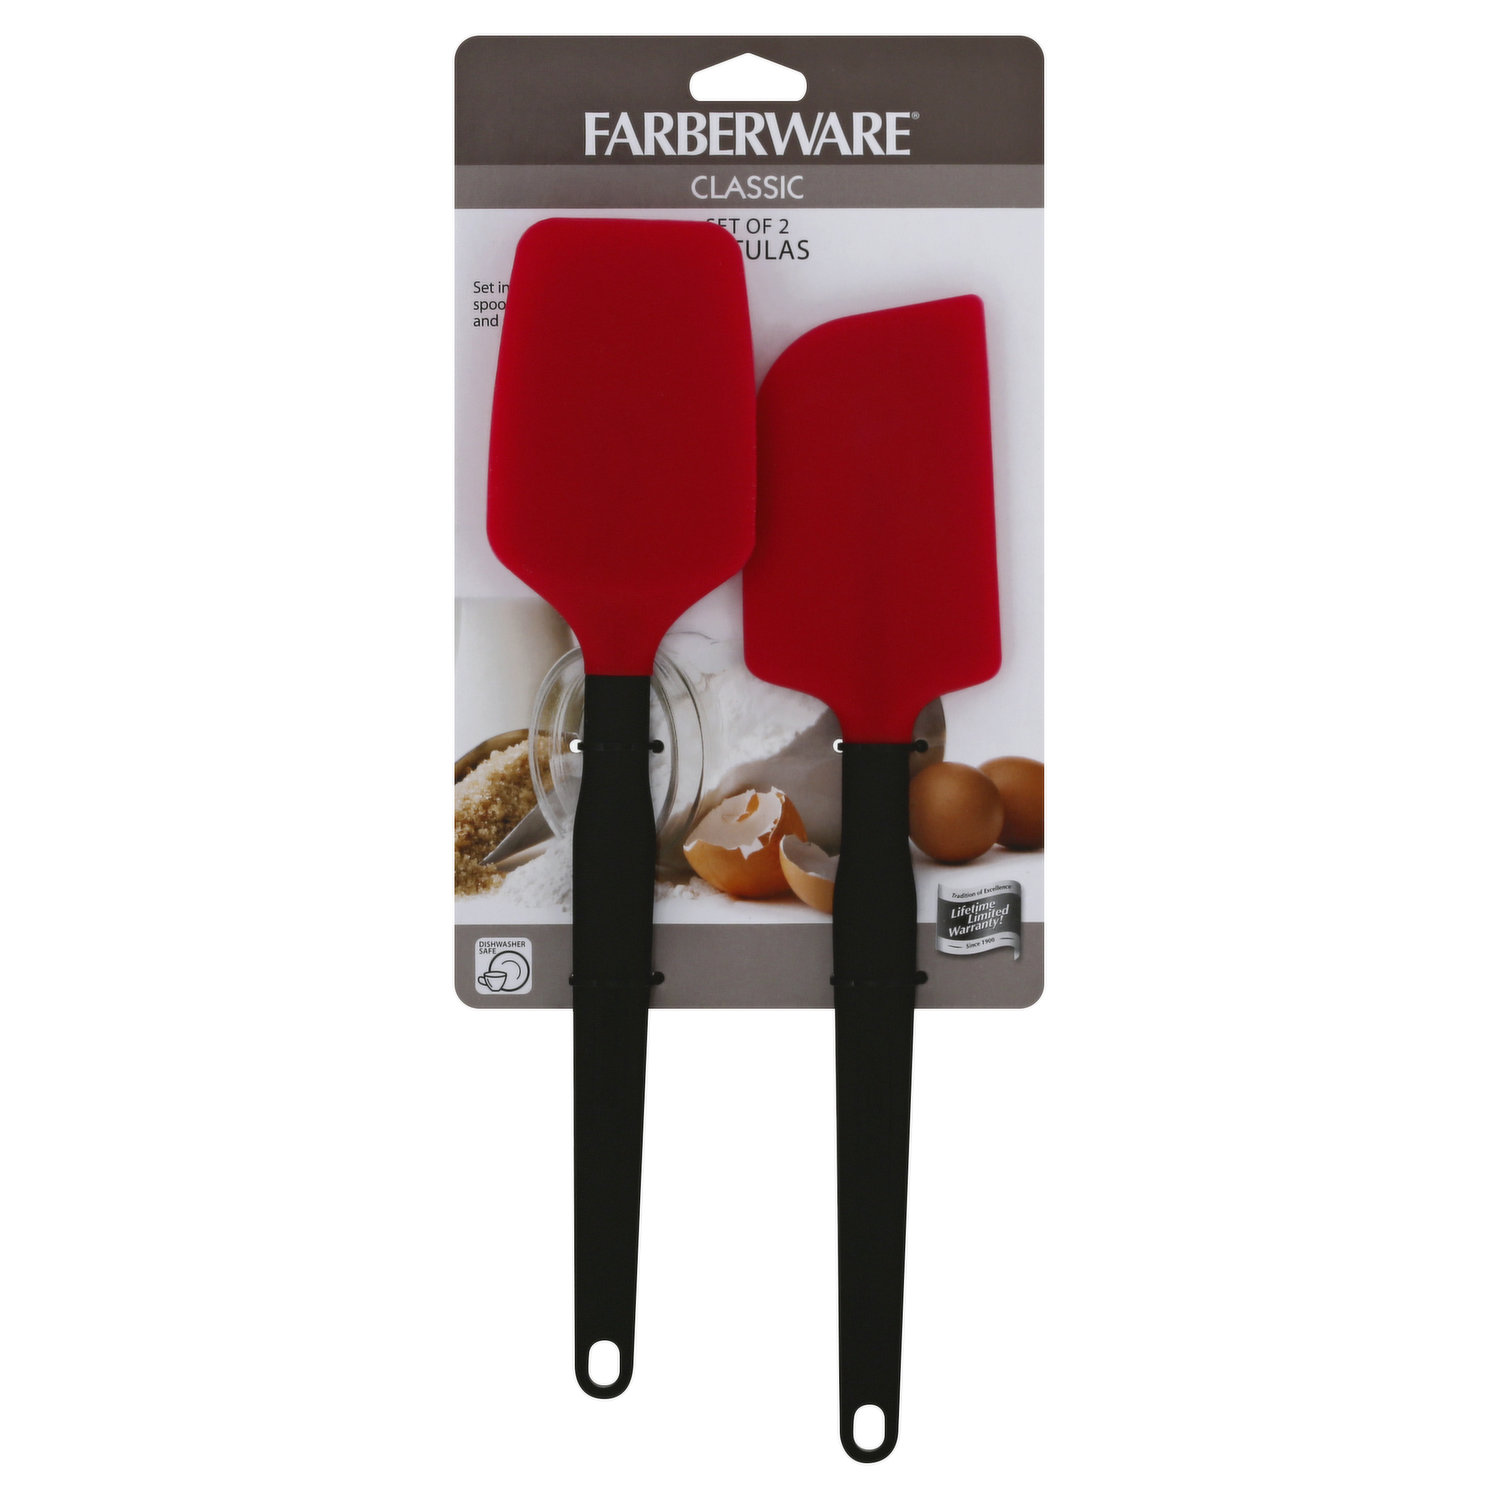 Farberware Euro Peeler Potato Peeler Item 5287729 New with tags